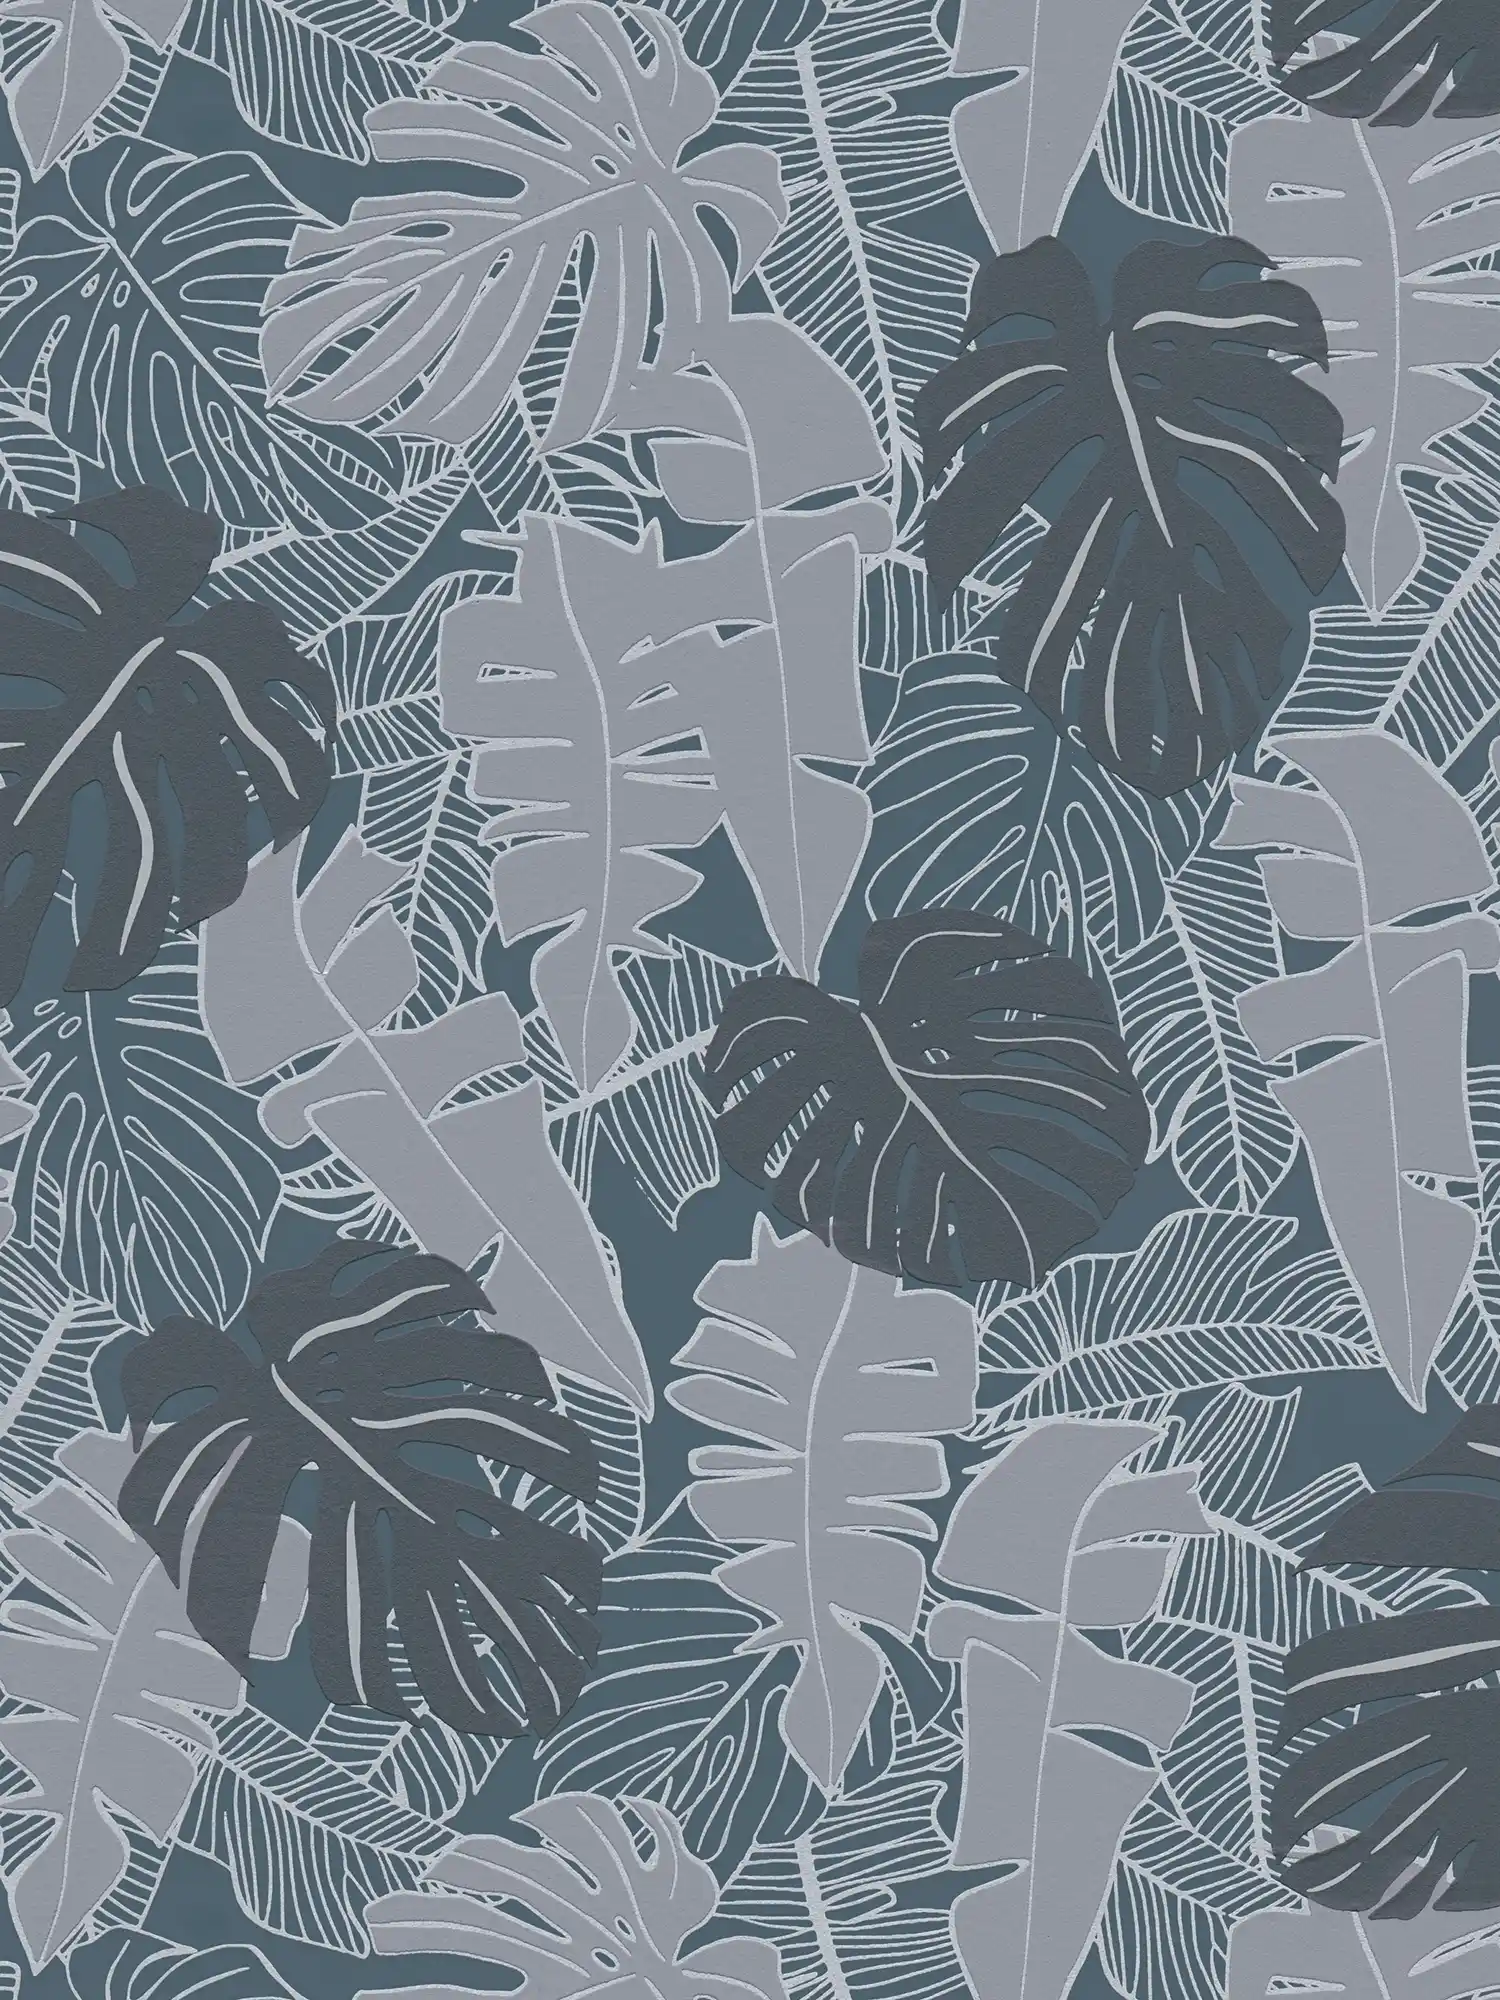 Jungle Patroon Behang met Bananenbladeren & Metallic Effect - Zwart, Grijs
